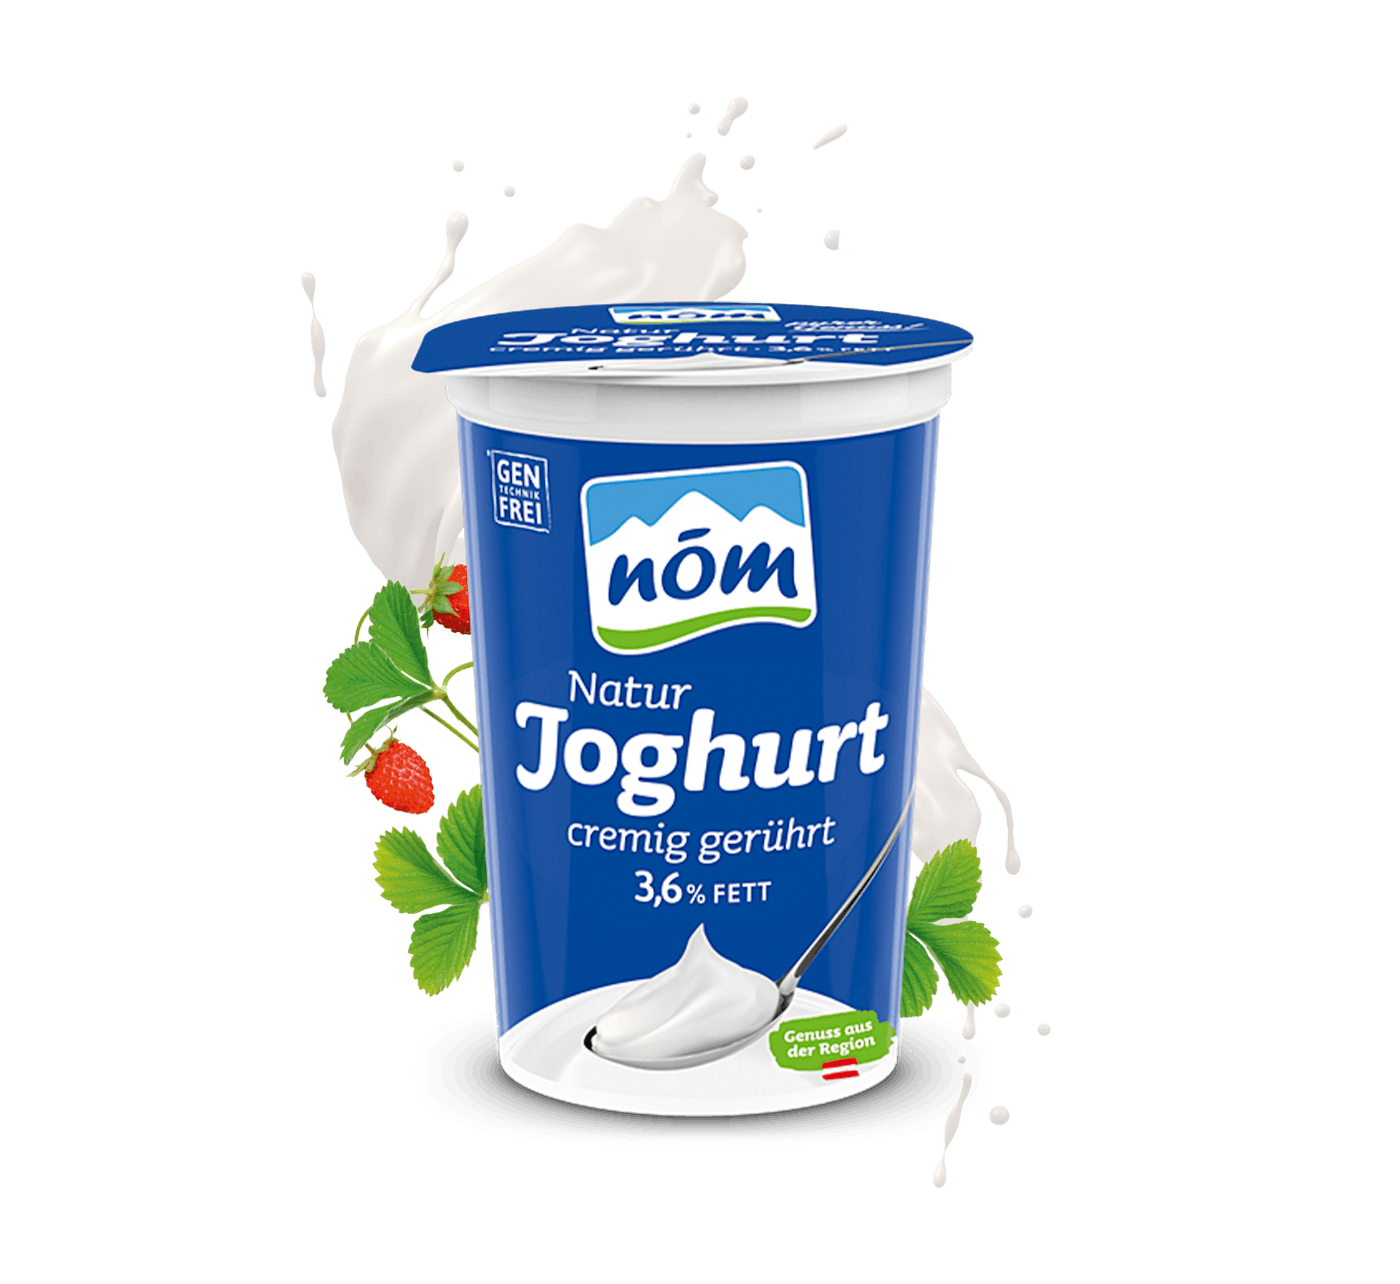 NÖM Natur Joghurt mit 3,6 % Fett im 250 g Becher mit Blumen